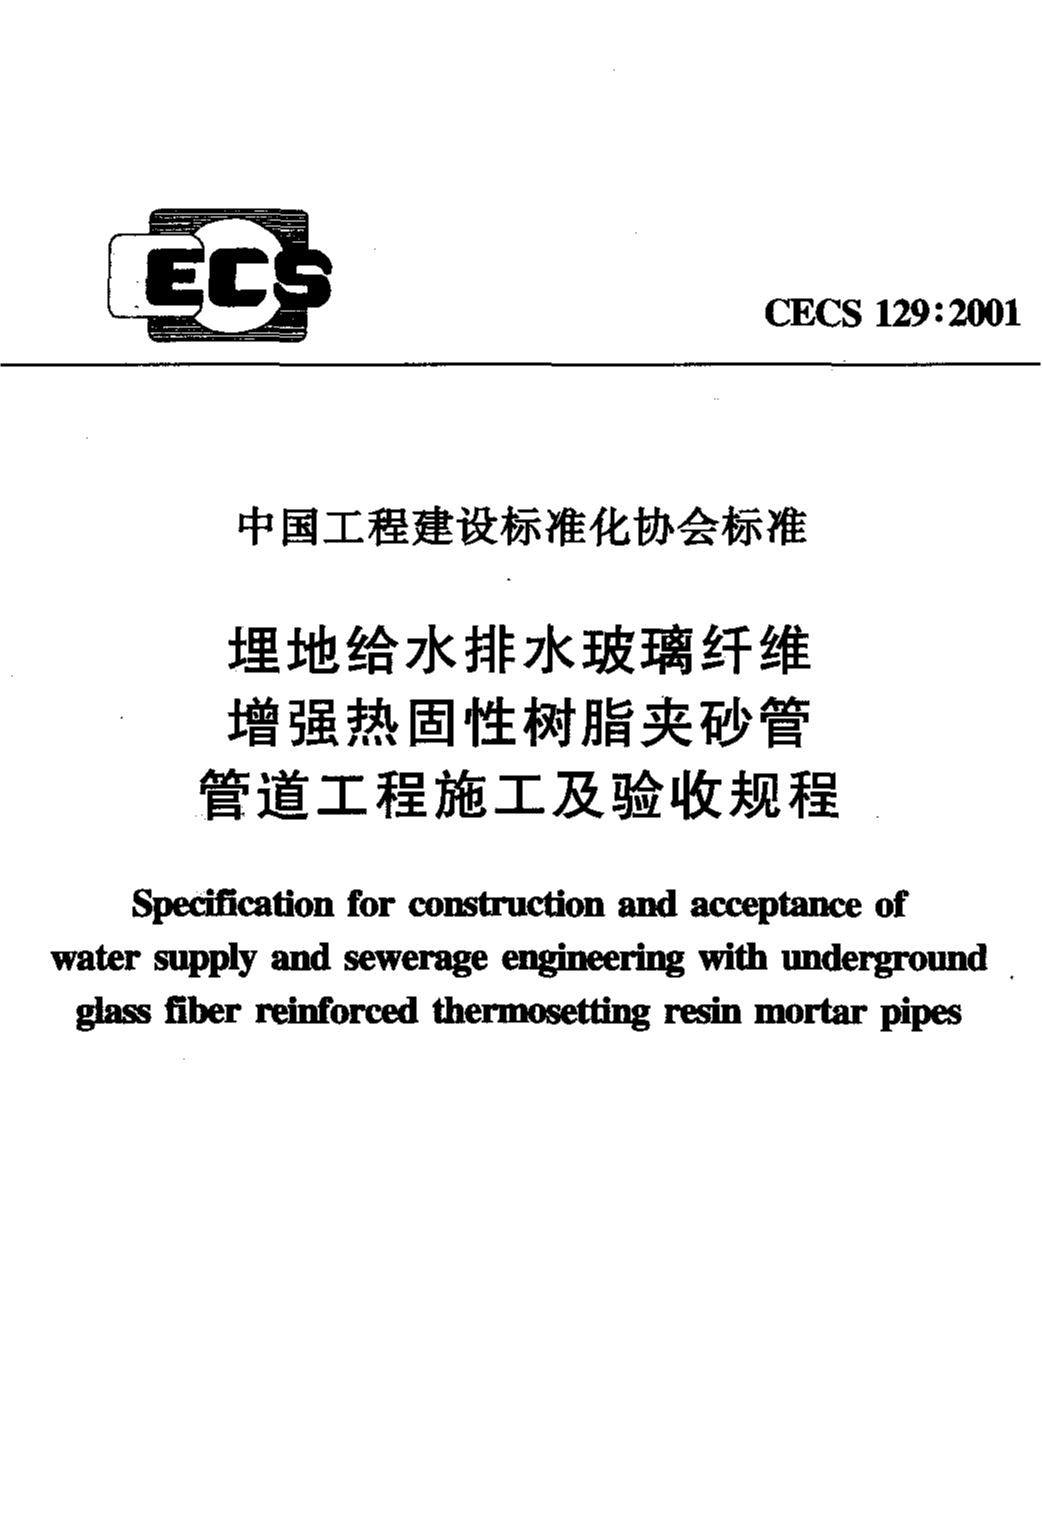 CECS 129-2001 埋地给水排水玻璃纤维增强热固性树脂夹砂管管道工程施工及验收规程